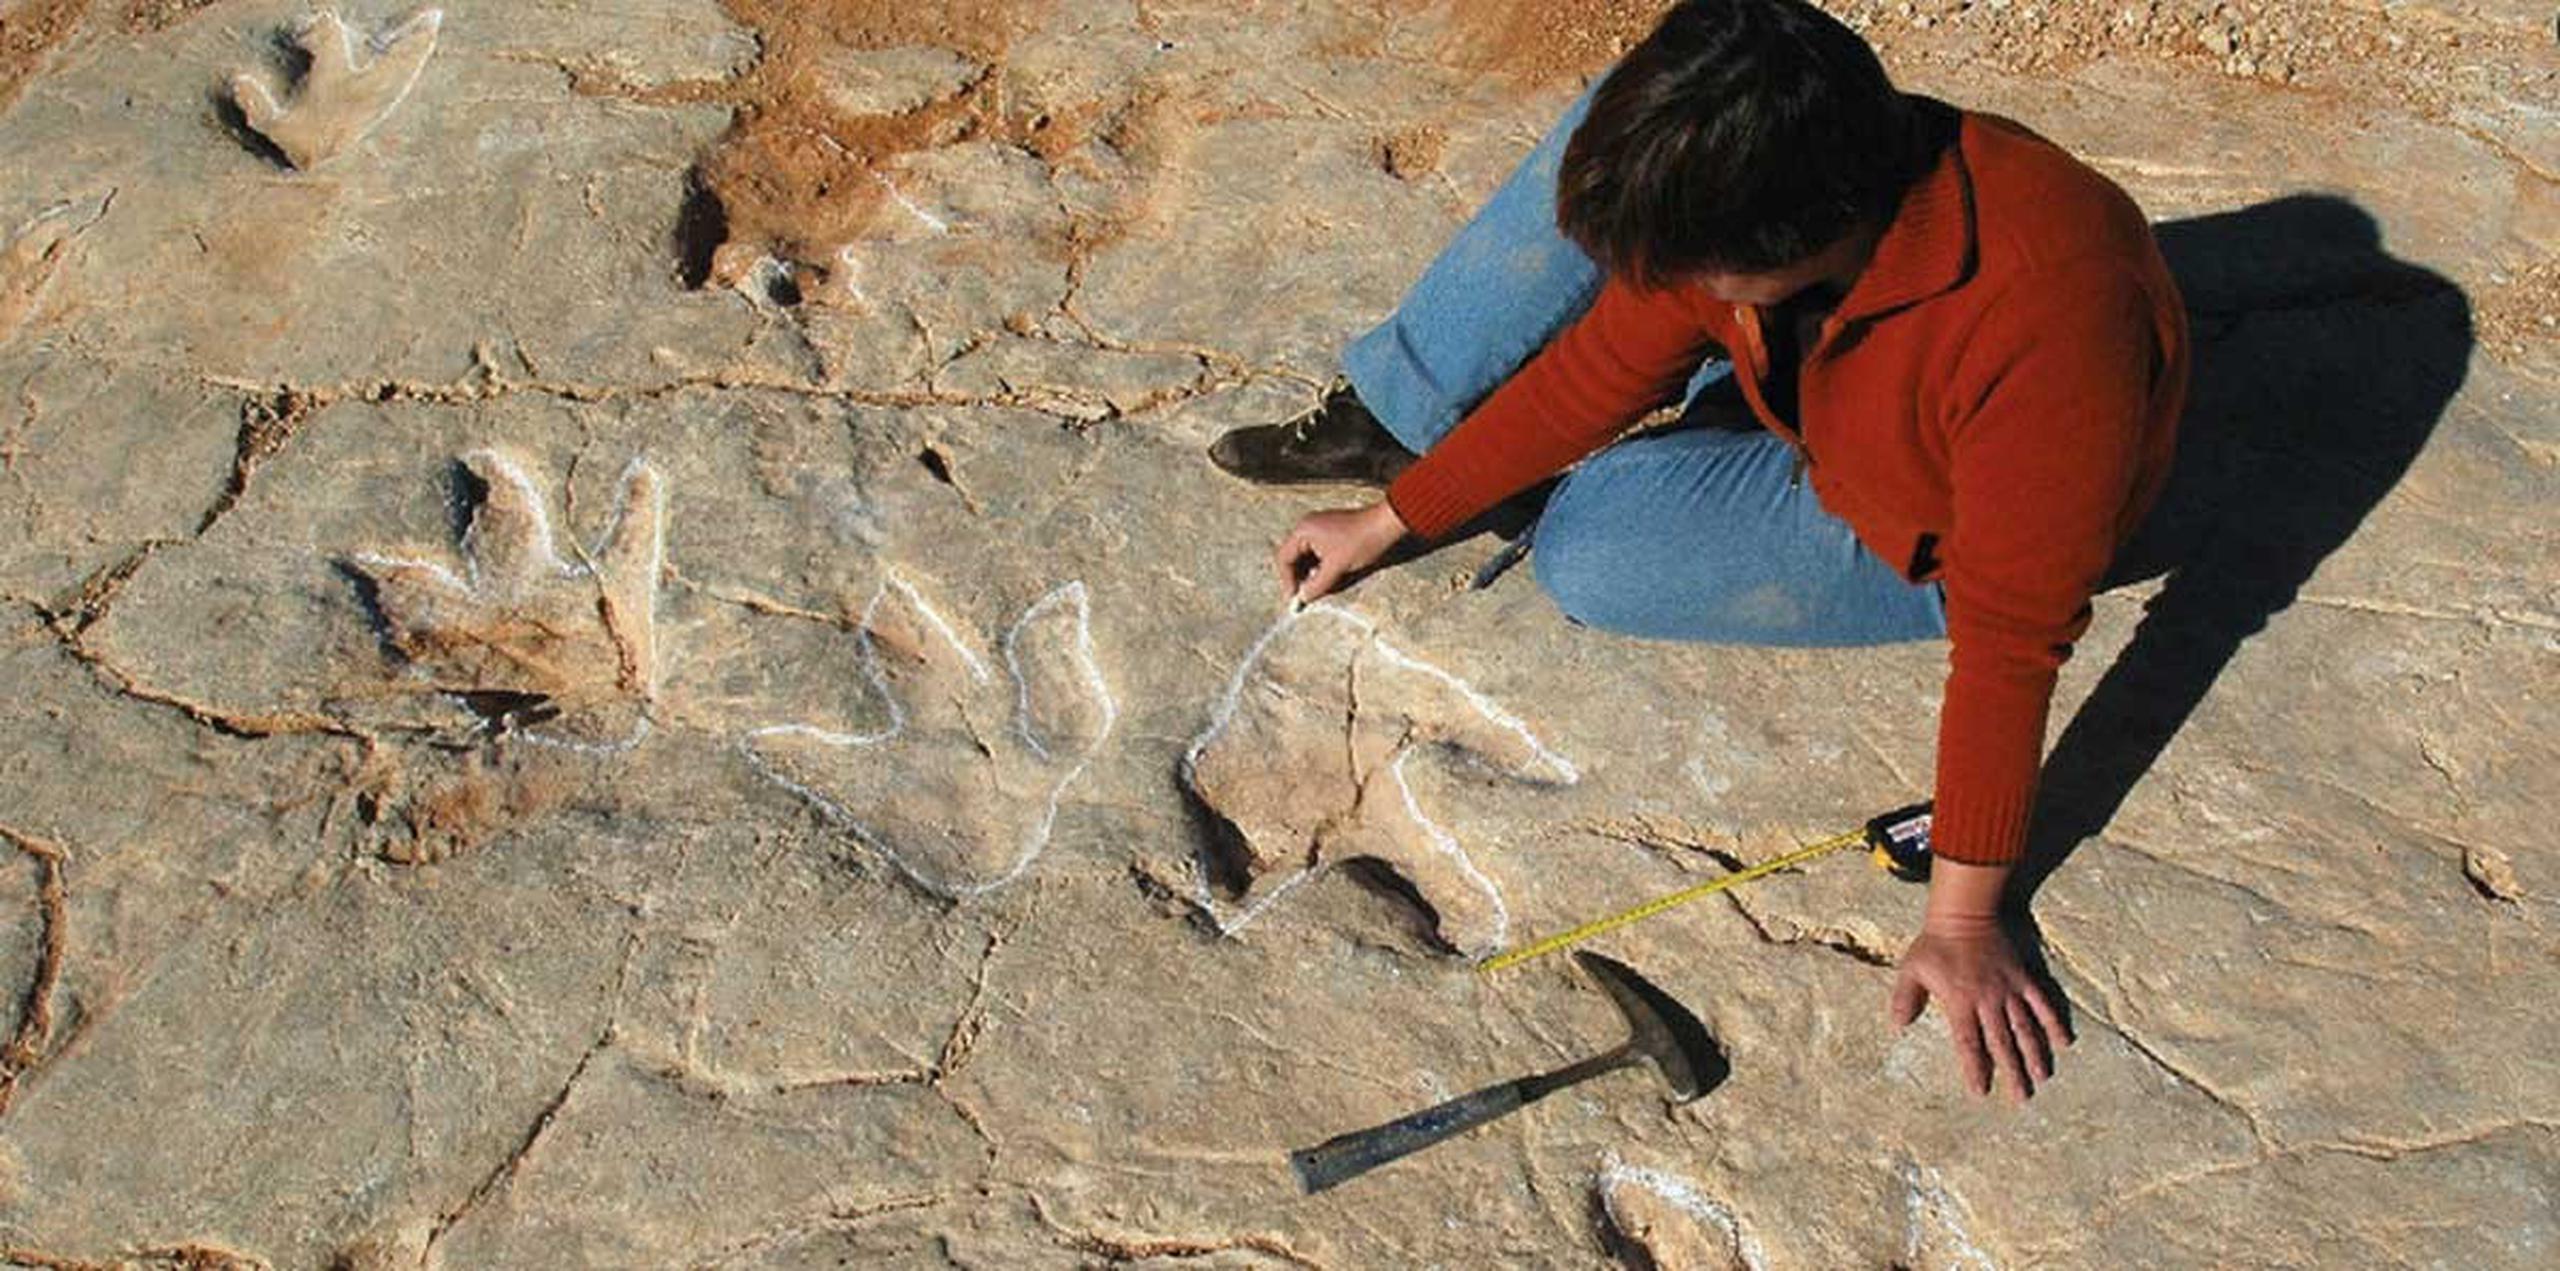 La concentración de más de 700 huellas de estos dinosaurios cazadores solitarios supone "un excepcional hallazgo". (Toma pantalla / nature.com/articles/srep31494/figures/1)